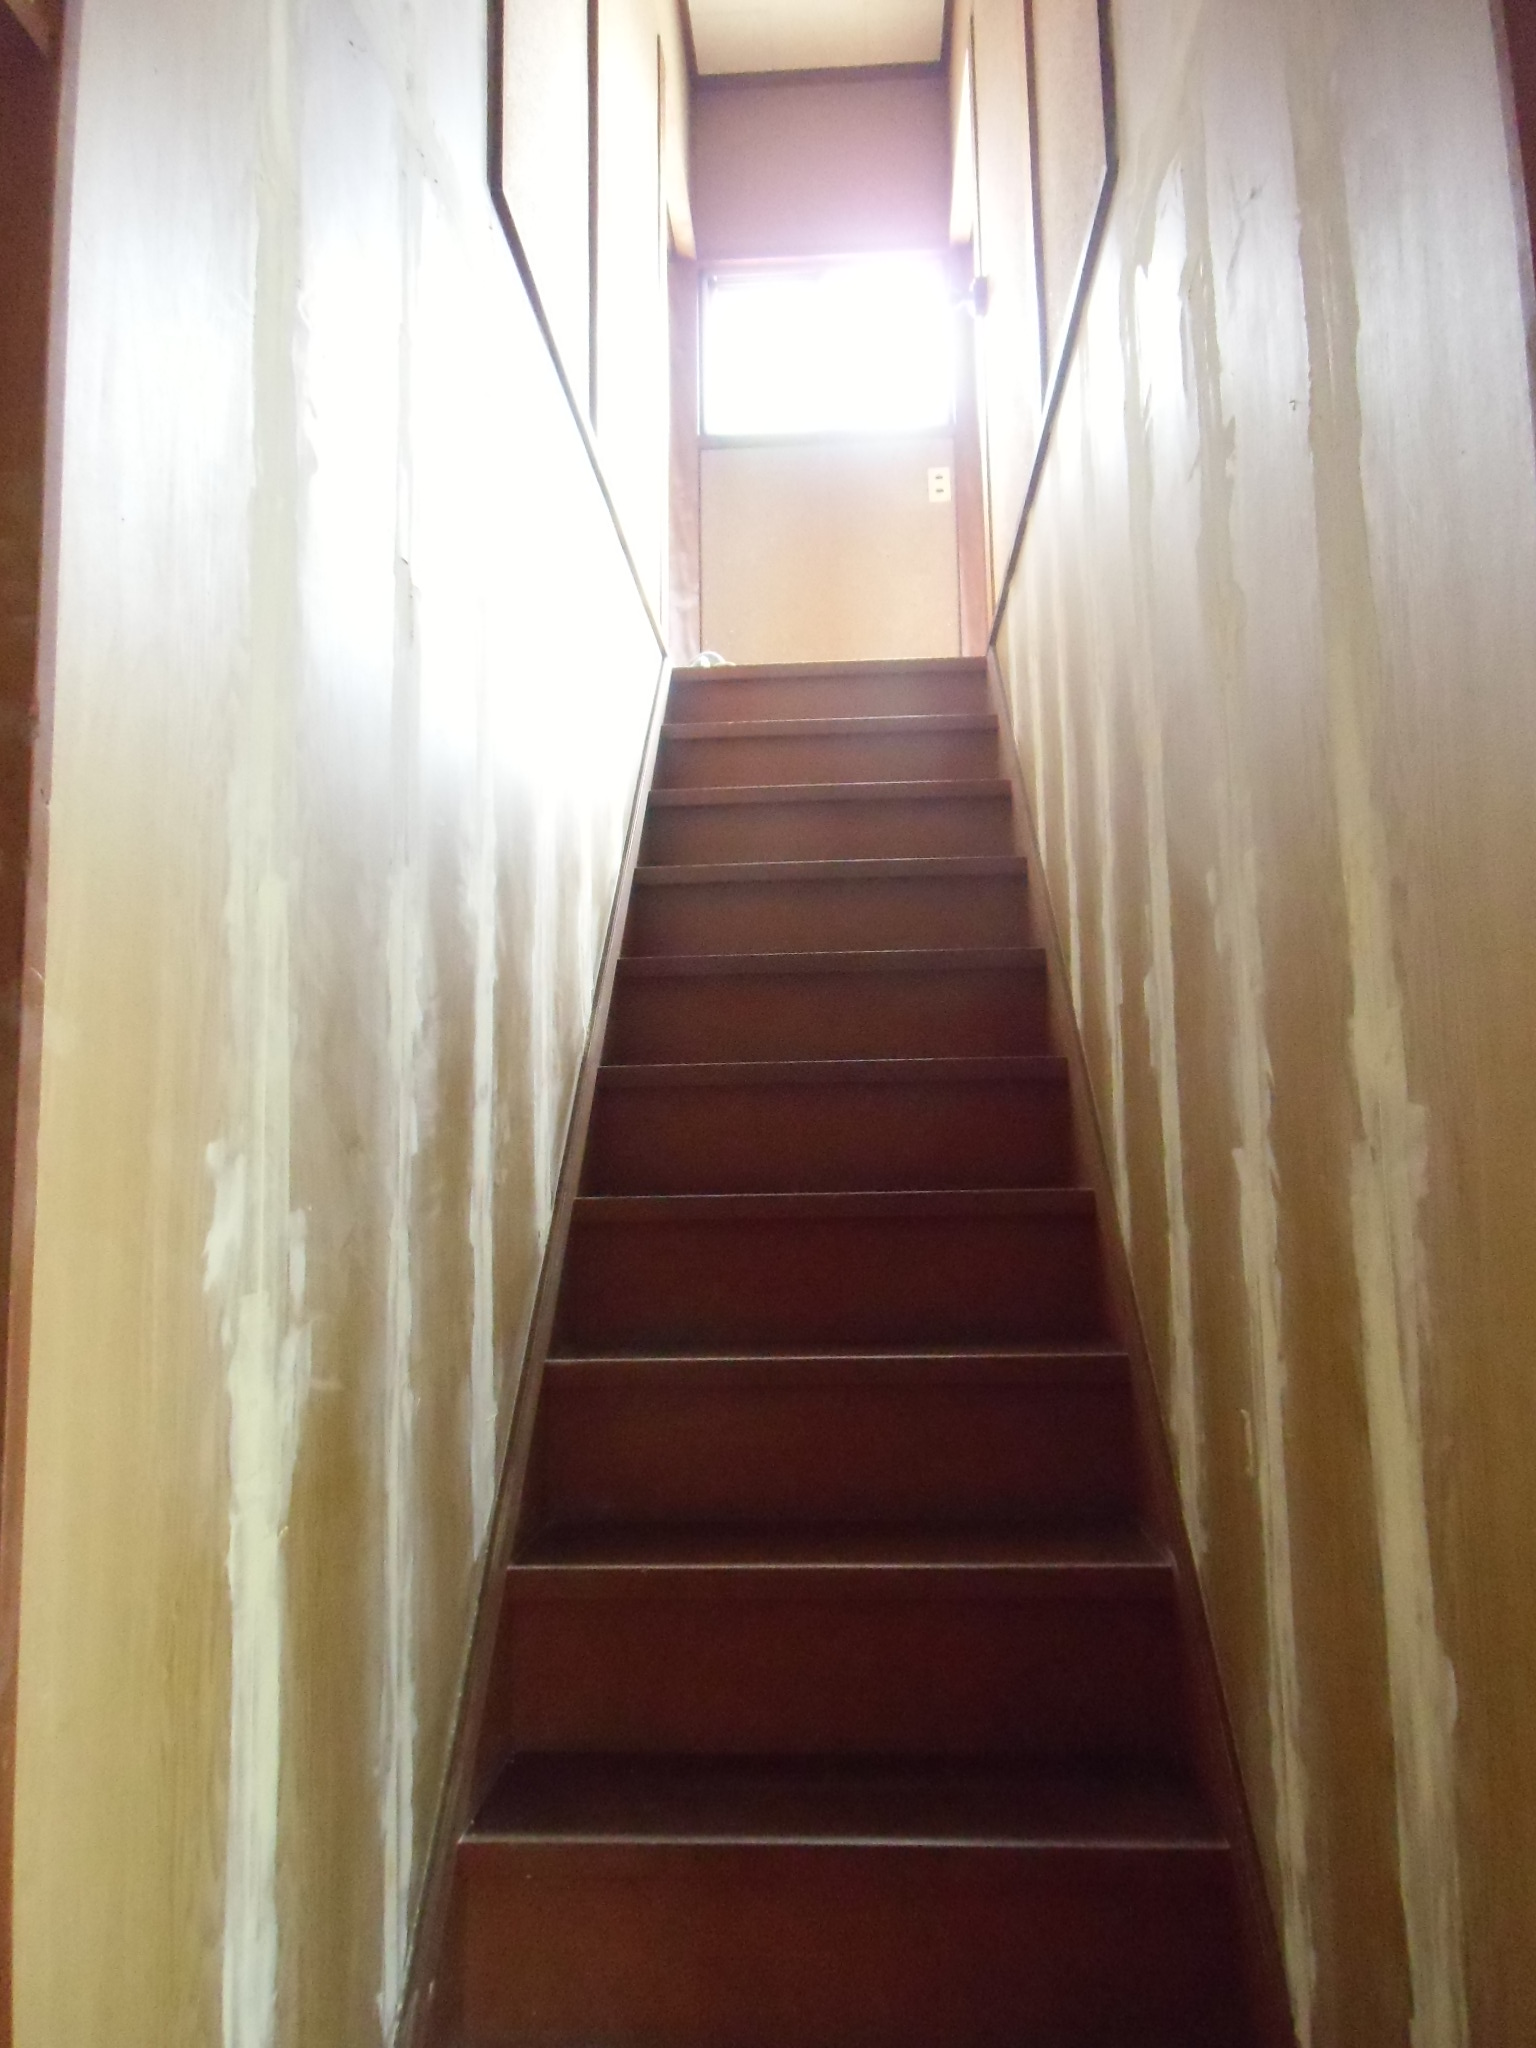 Diyで階段の壁紙の貼り方 1 階段のクロス 合板にパテで下地を作る